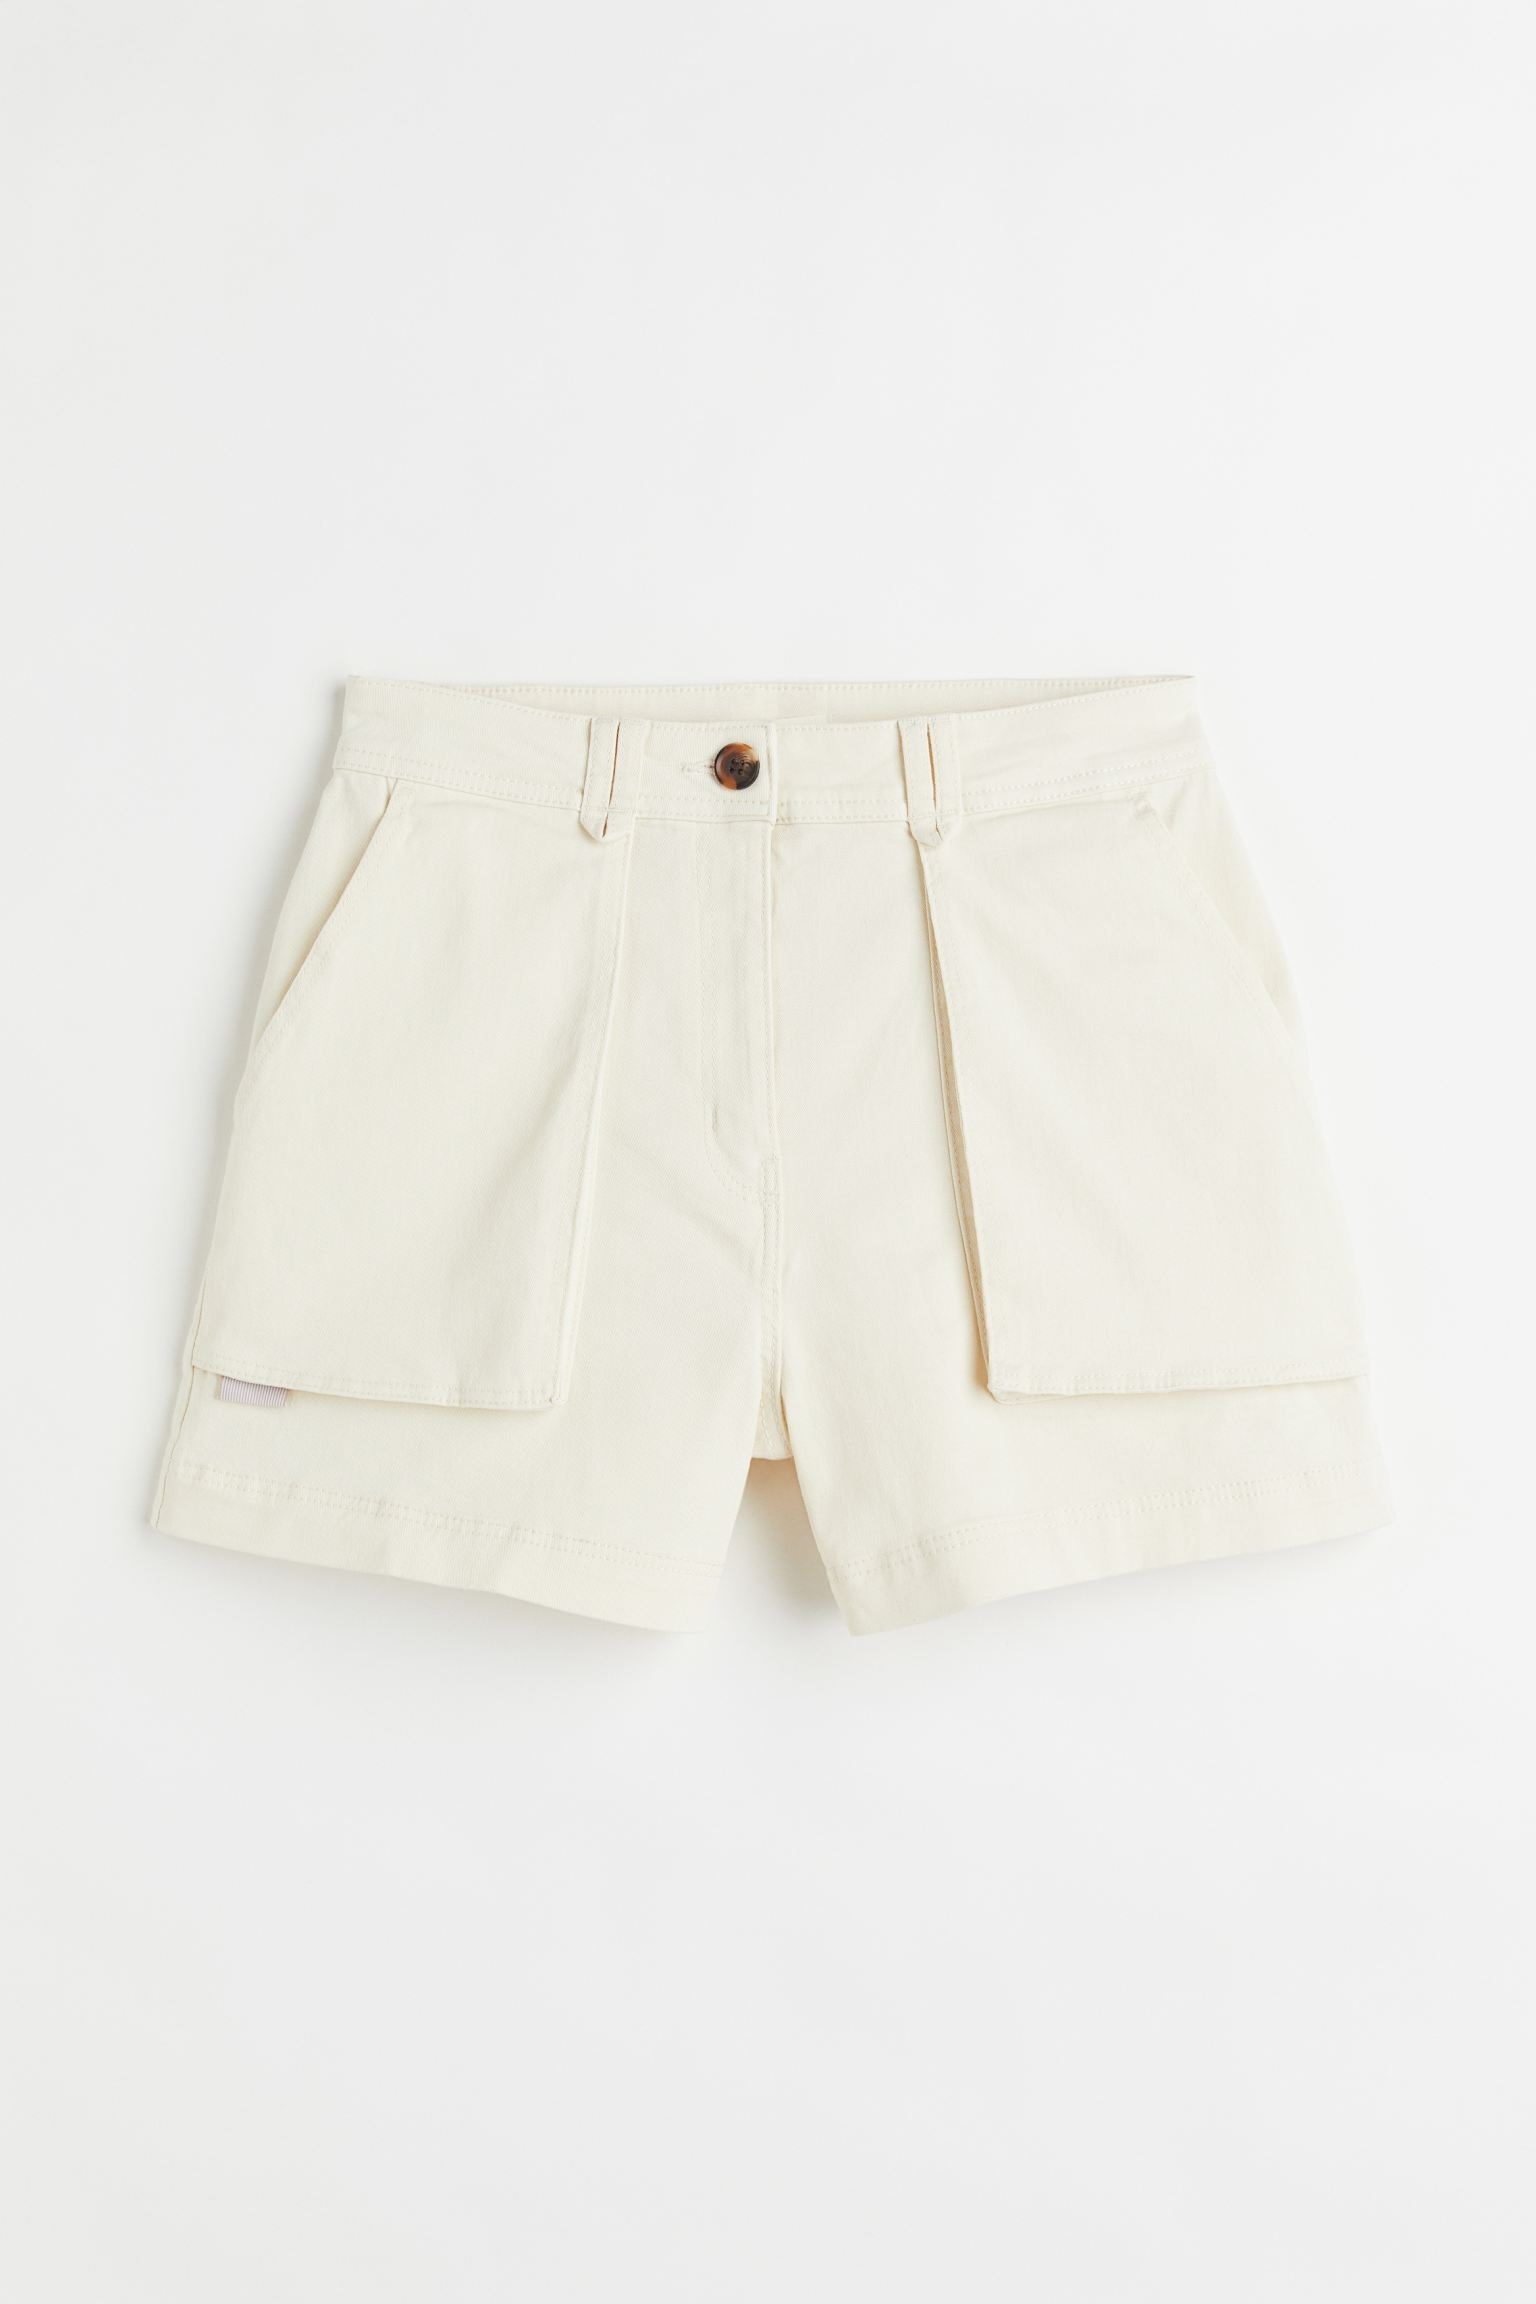 Los 13 shorts Sfera a H&M para que ya tienen ganas de verano | Moda